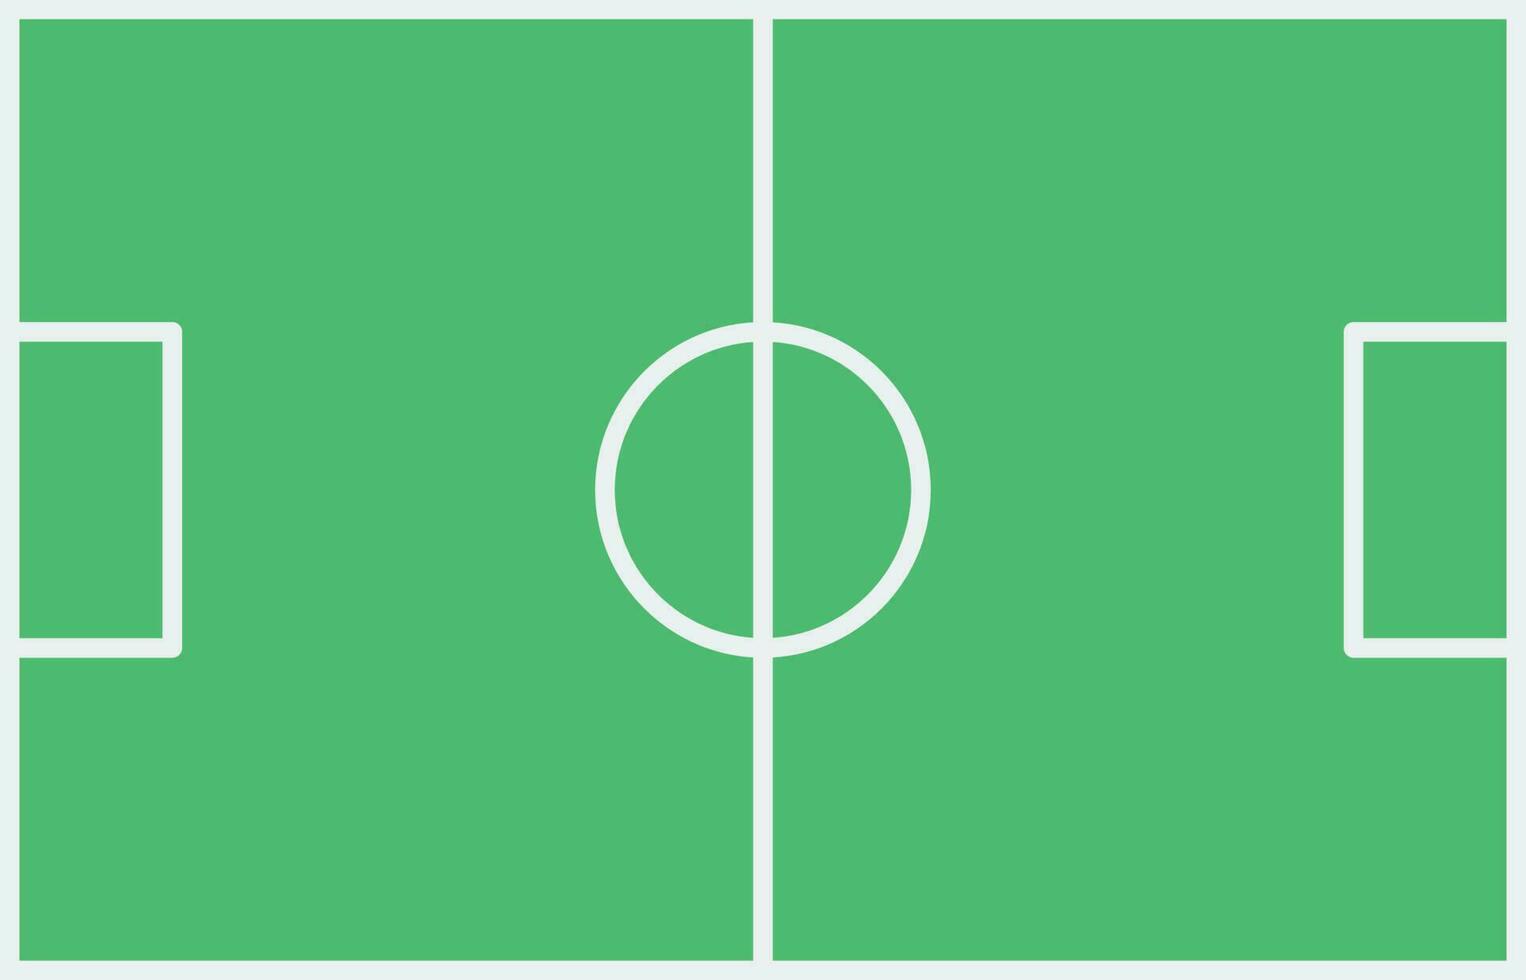 Fußball Feld Symbol Vektor Bild. geeignet zum Handy, Mobiltelefon Apps, Netz Apps und drucken Medien.